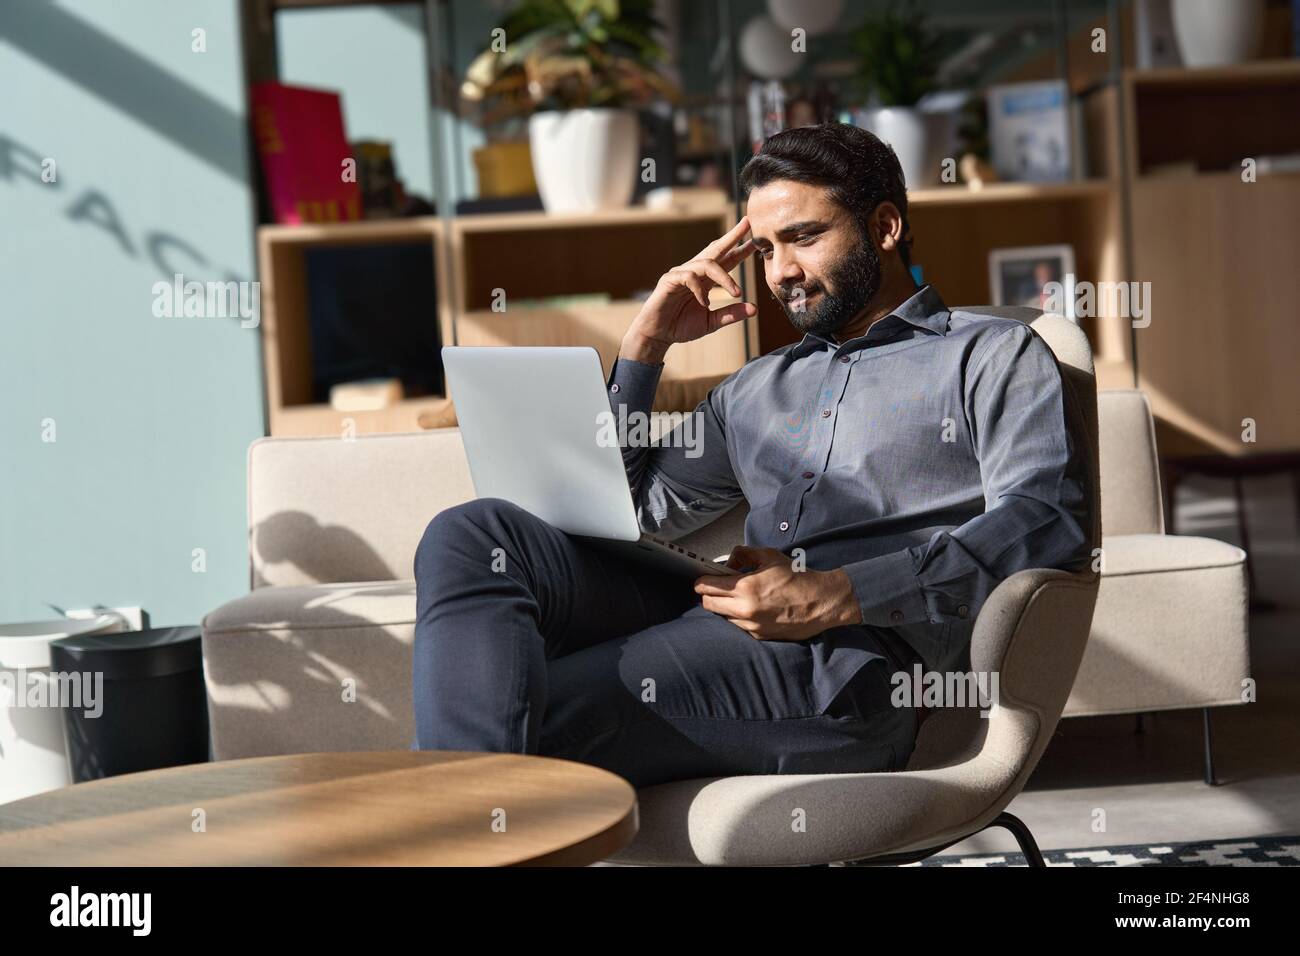 Un homme d'affaires indien travaillant sur un ordinateur portable, assis sur une chaise dans le bureau. Banque D'Images